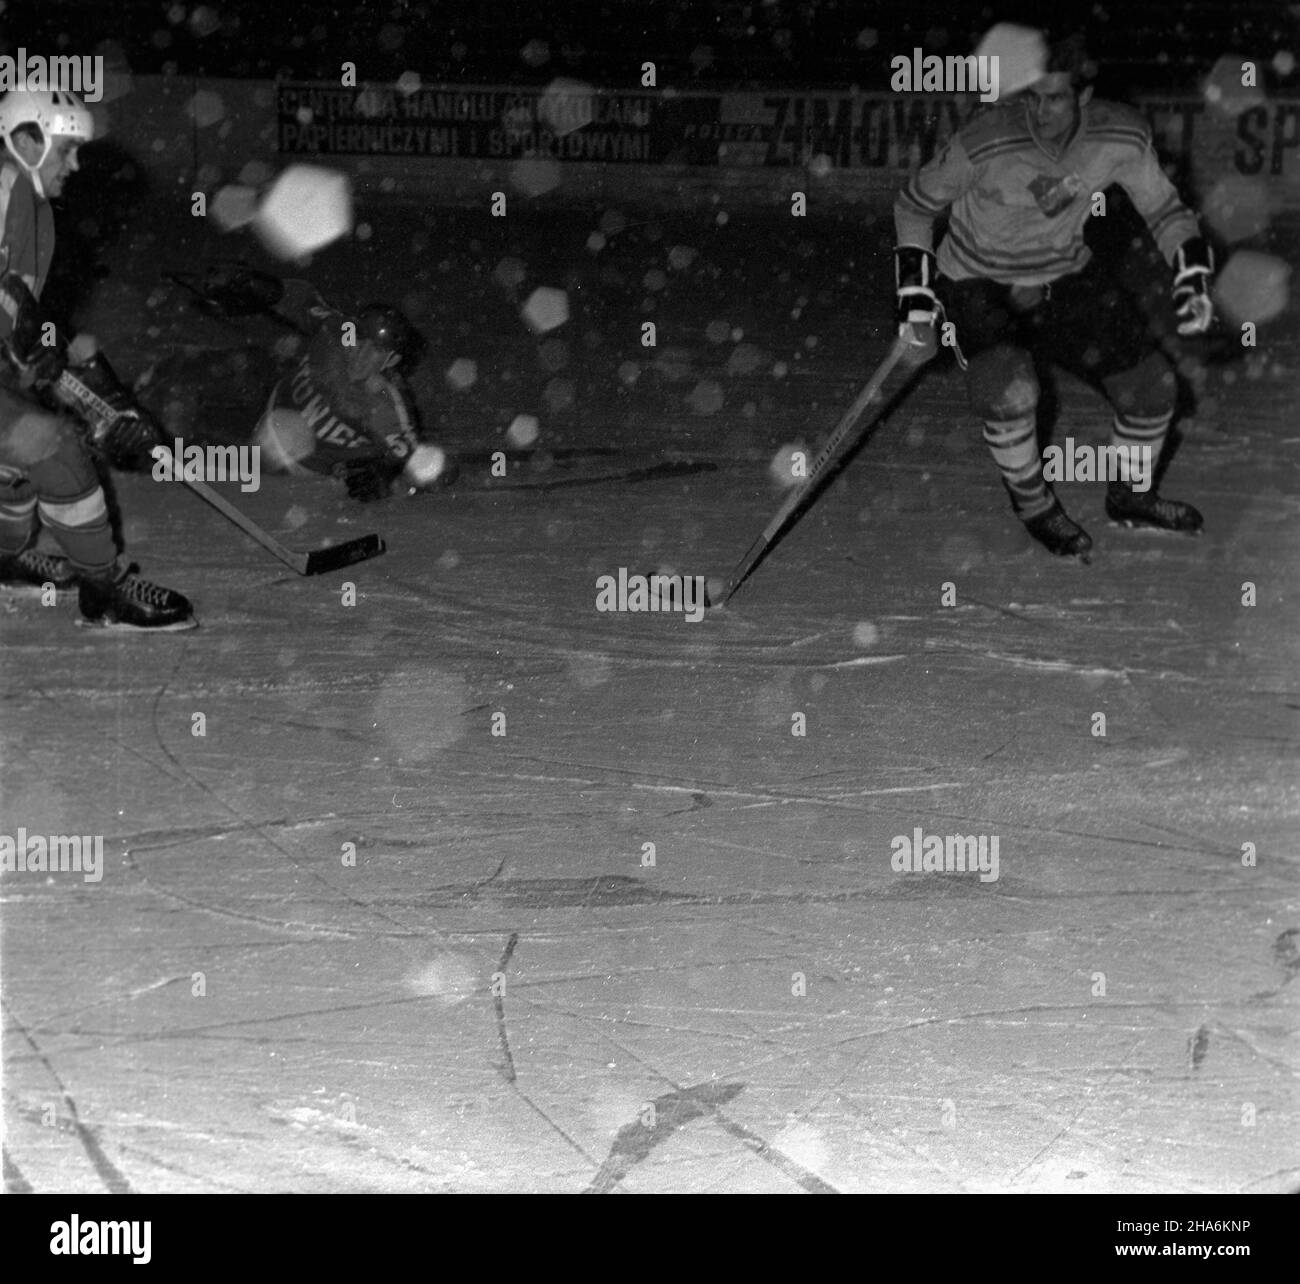 Katowice, 1969-12-01. Turniej hokejowy, odbywaj¹cy siê w katowickim Torkacie z okazji Dnia Górnika. Nz. fragmenty spotkania Górniczego Klubu Sportowego (GKS) Katowice (ciemniejsze bluzy) i Banik Ostrava (jaœniejsze bluzy), wygranego przez GKS 6:2. mb  PAP/Kazimierz Seko      Katowice, Dec. 1, 1969. The Mining Day Hockey Championships were held in Katowice's Torkat.  Pictured: a match between Gorniczy Klub Sportowy (GKS) Katowice (dark tops) and Banik Ostrava, won by GKS 6:2.  pw  PAP/Kazimierz Seko Stock Photo